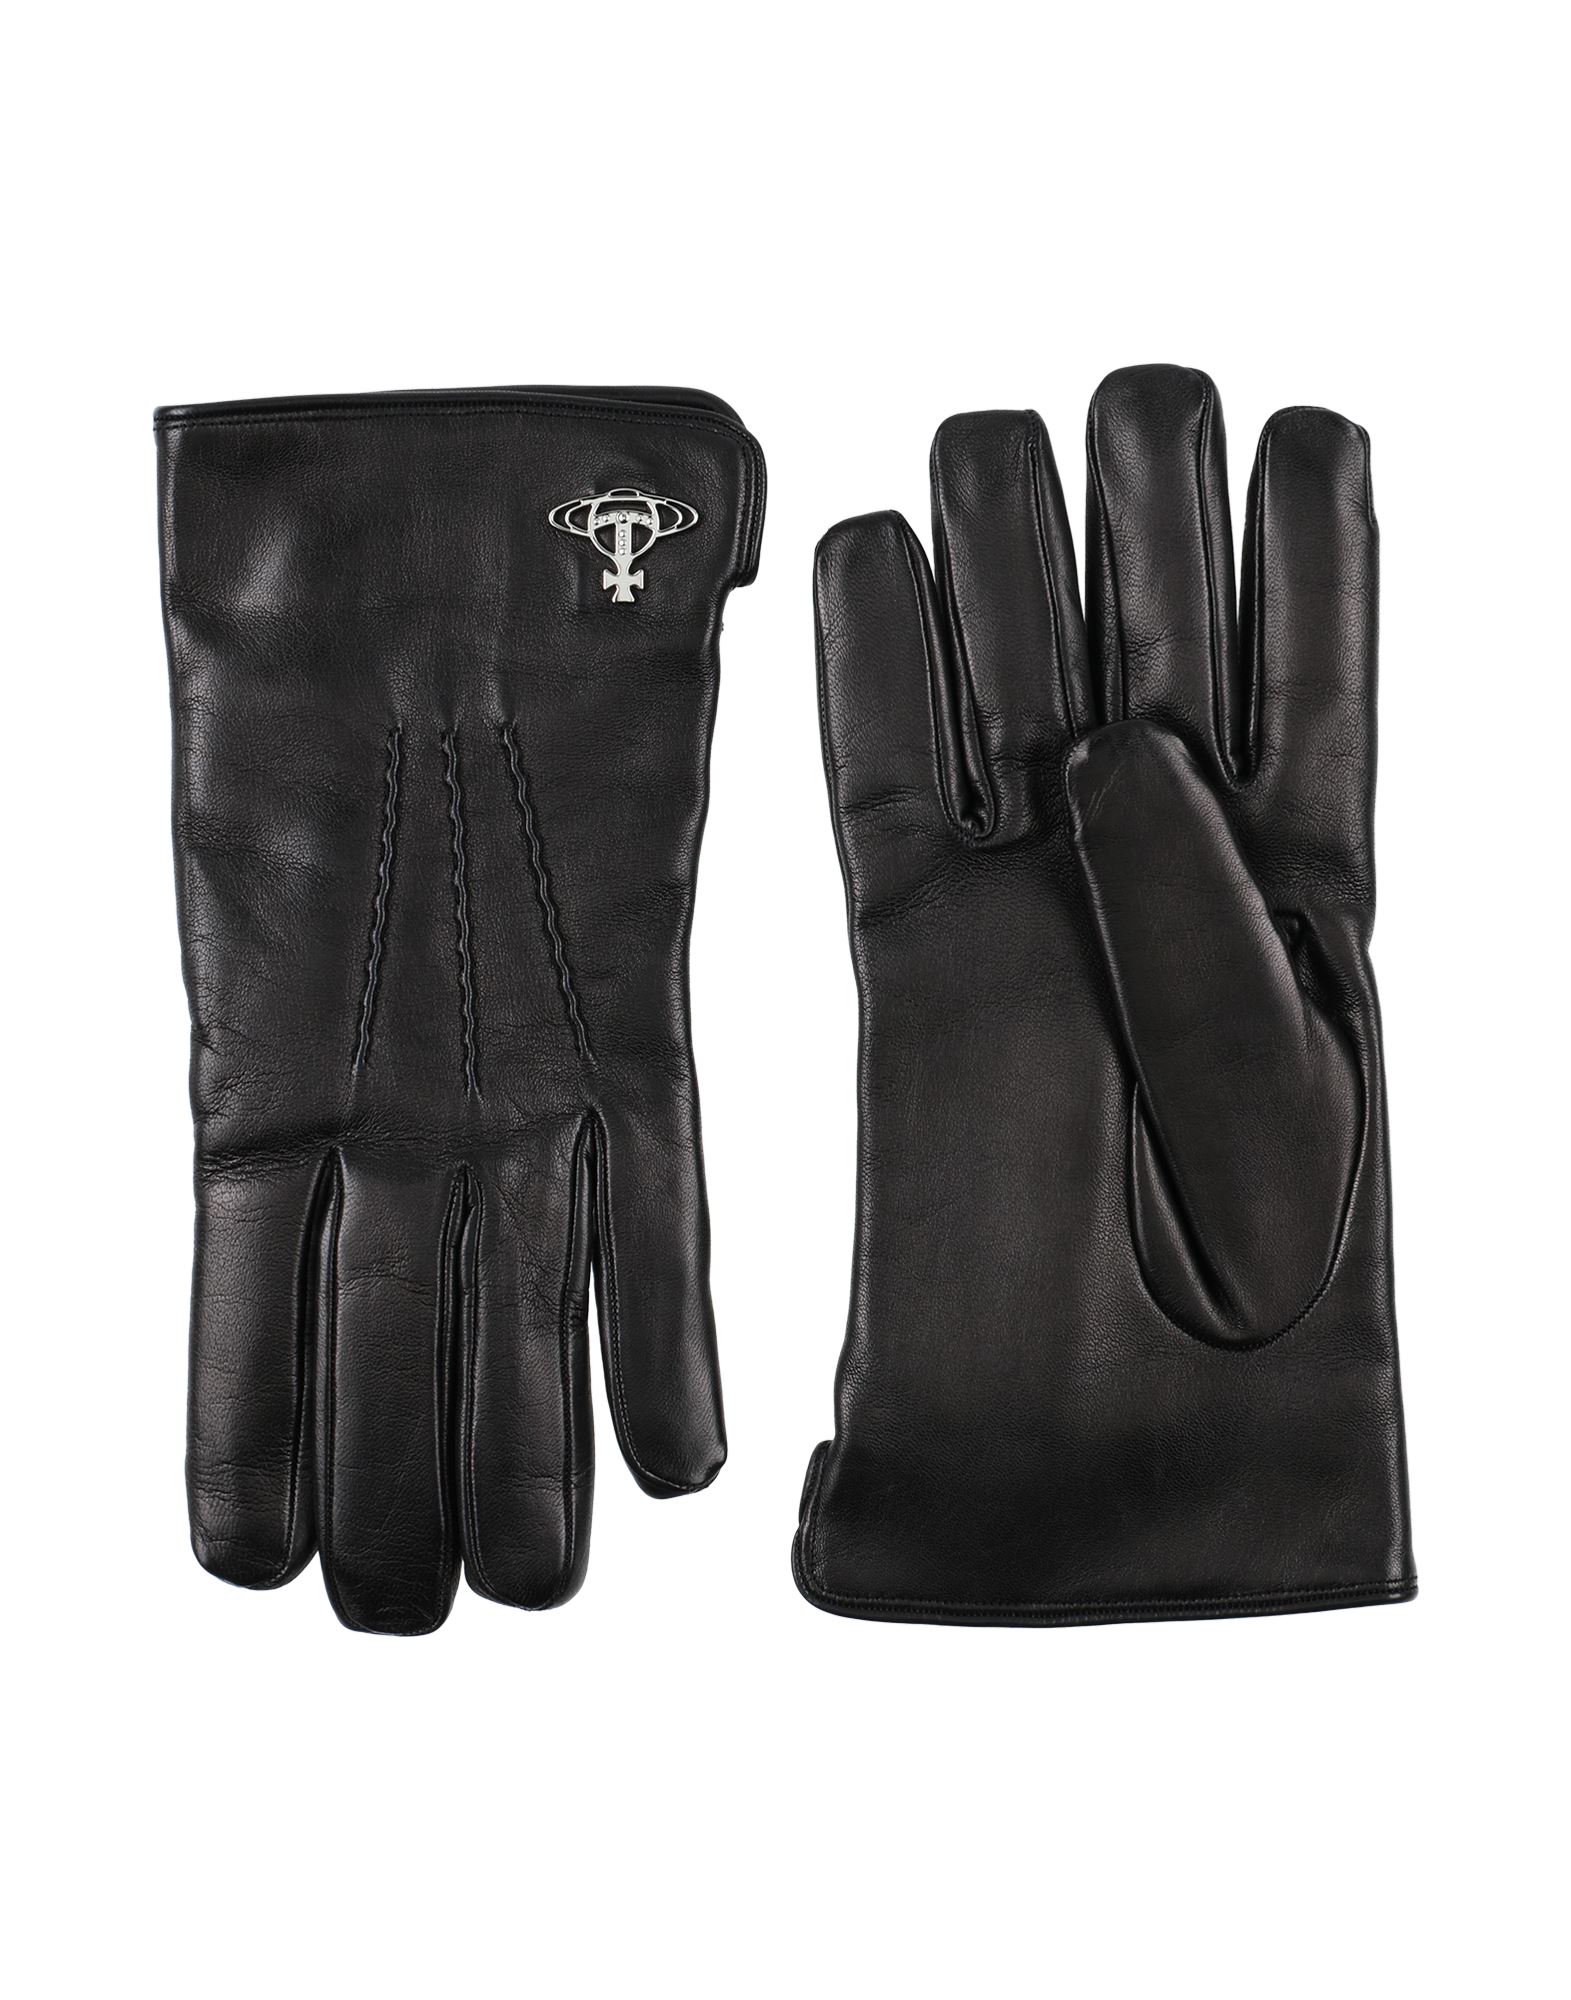 Vivienne Westwood Gloves In Black